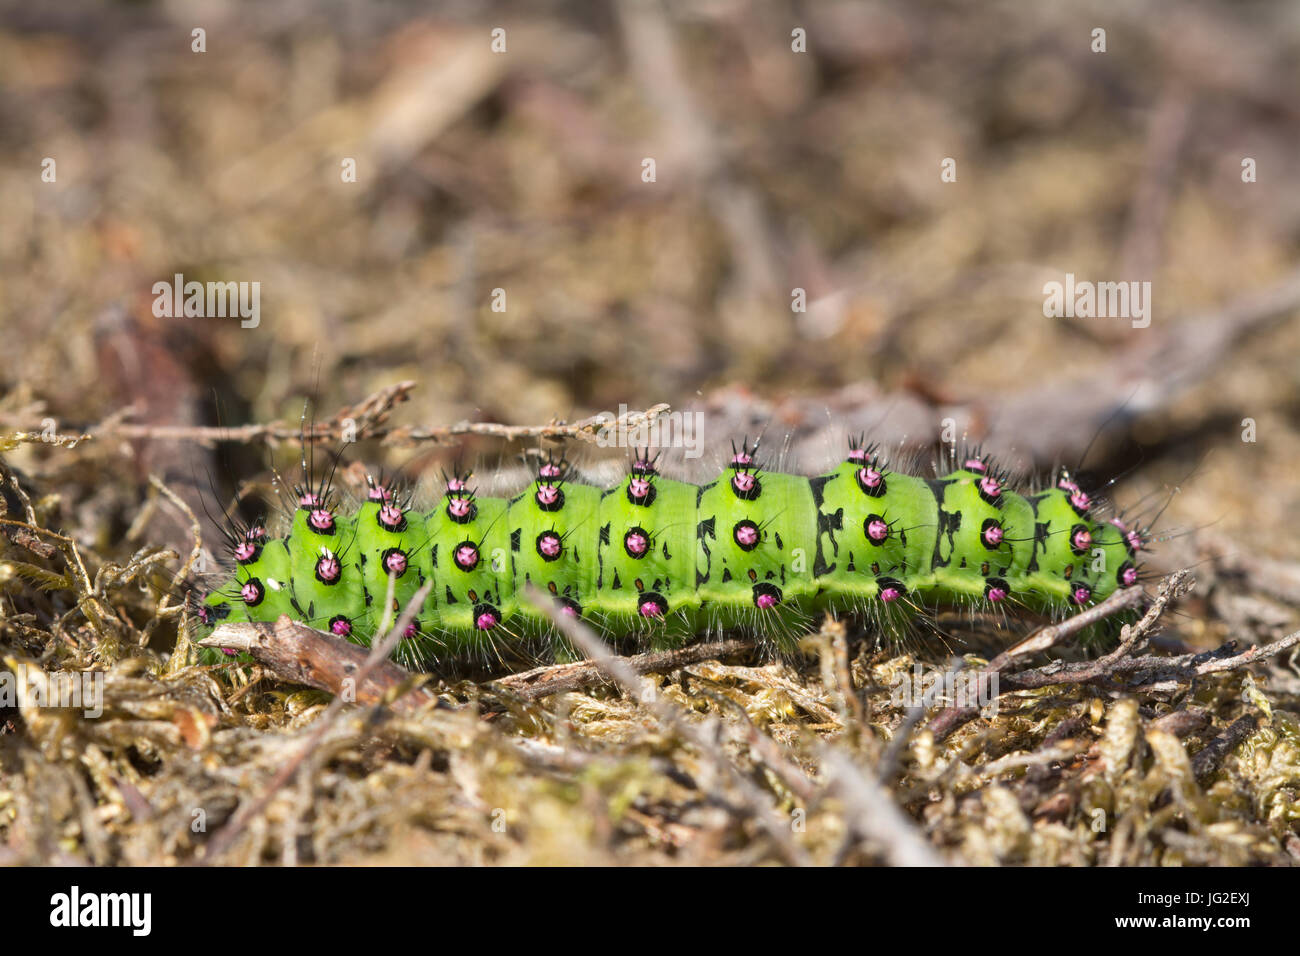 Close-up of brightly-coloured emperor moth (Saturnia pavonia) larva or caterpillar in heathland, UK Stock Photo